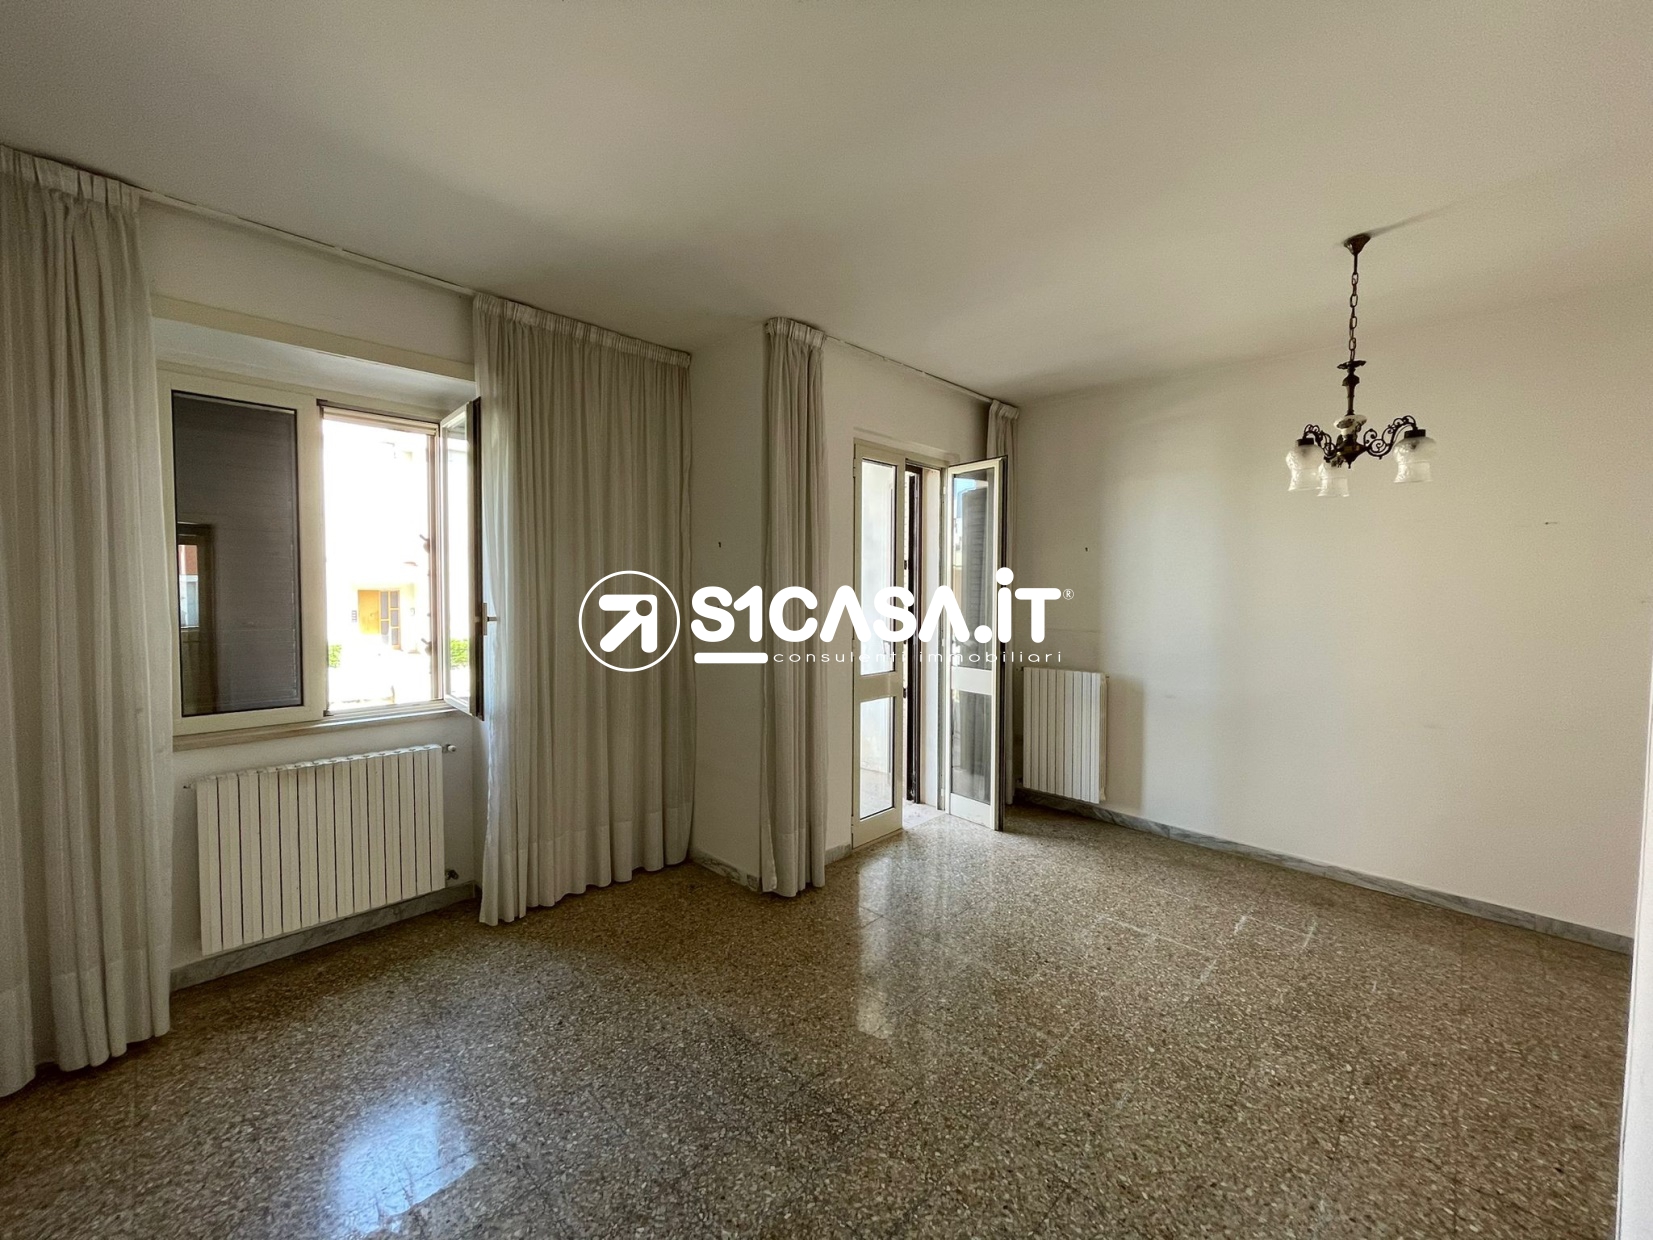 Appartamento in vendita a Galatone, 8 locali, prezzo € 43.000 | PortaleAgenzieImmobiliari.it